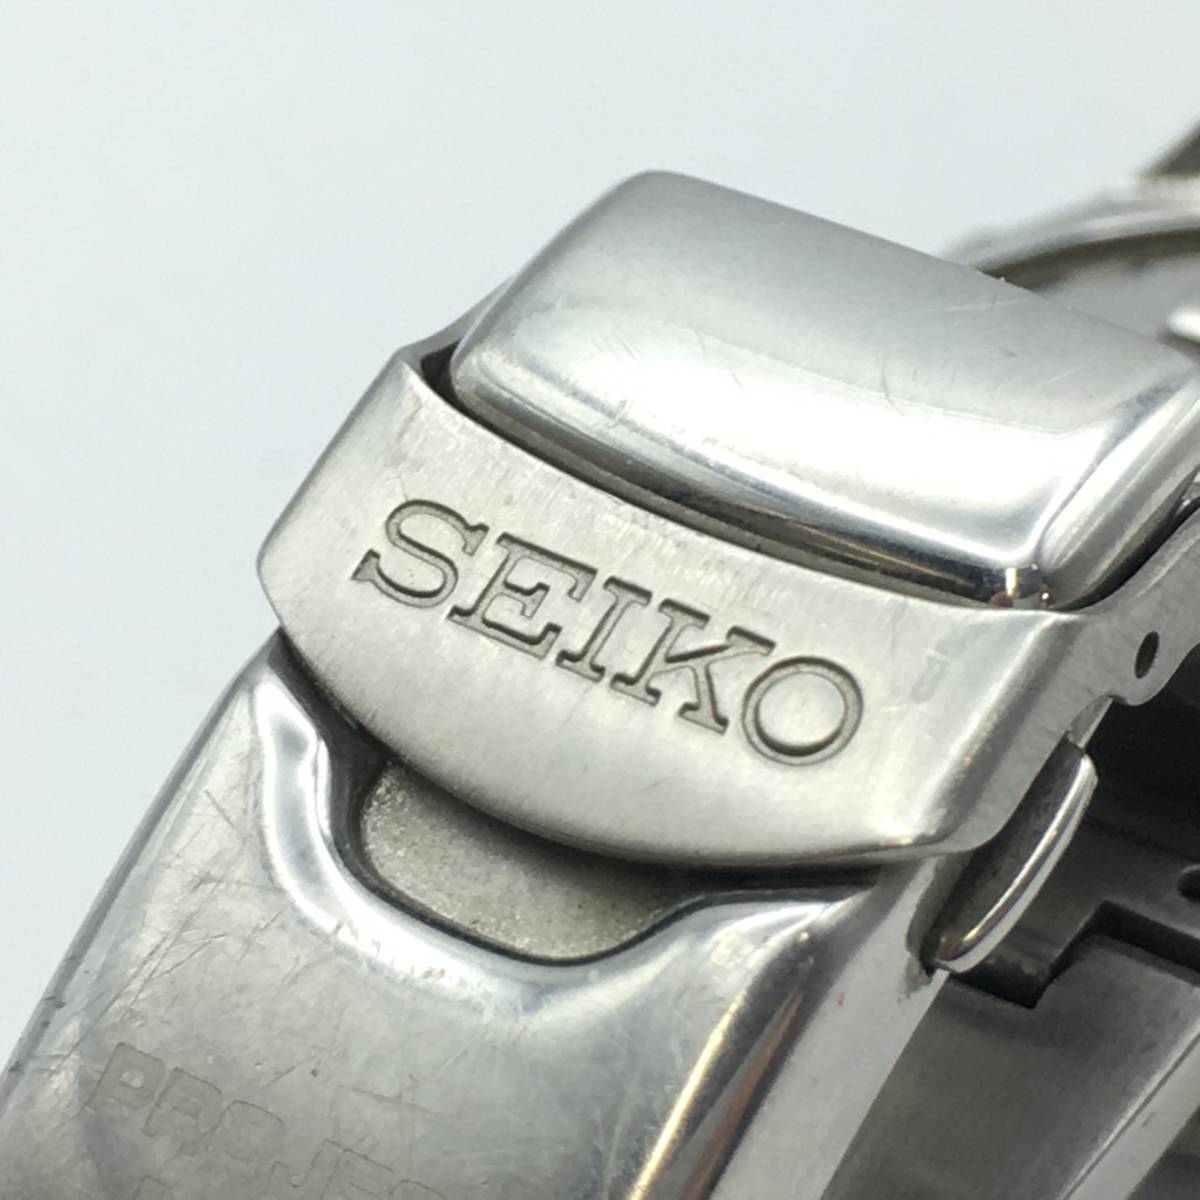 ◯K10-383 SEIKO/セイコー CHRONOPOLIS 2400 クロノポリス 3針 Date デイト メンズ クォーツ 腕時計 7T52-6000 付属品あり_画像8